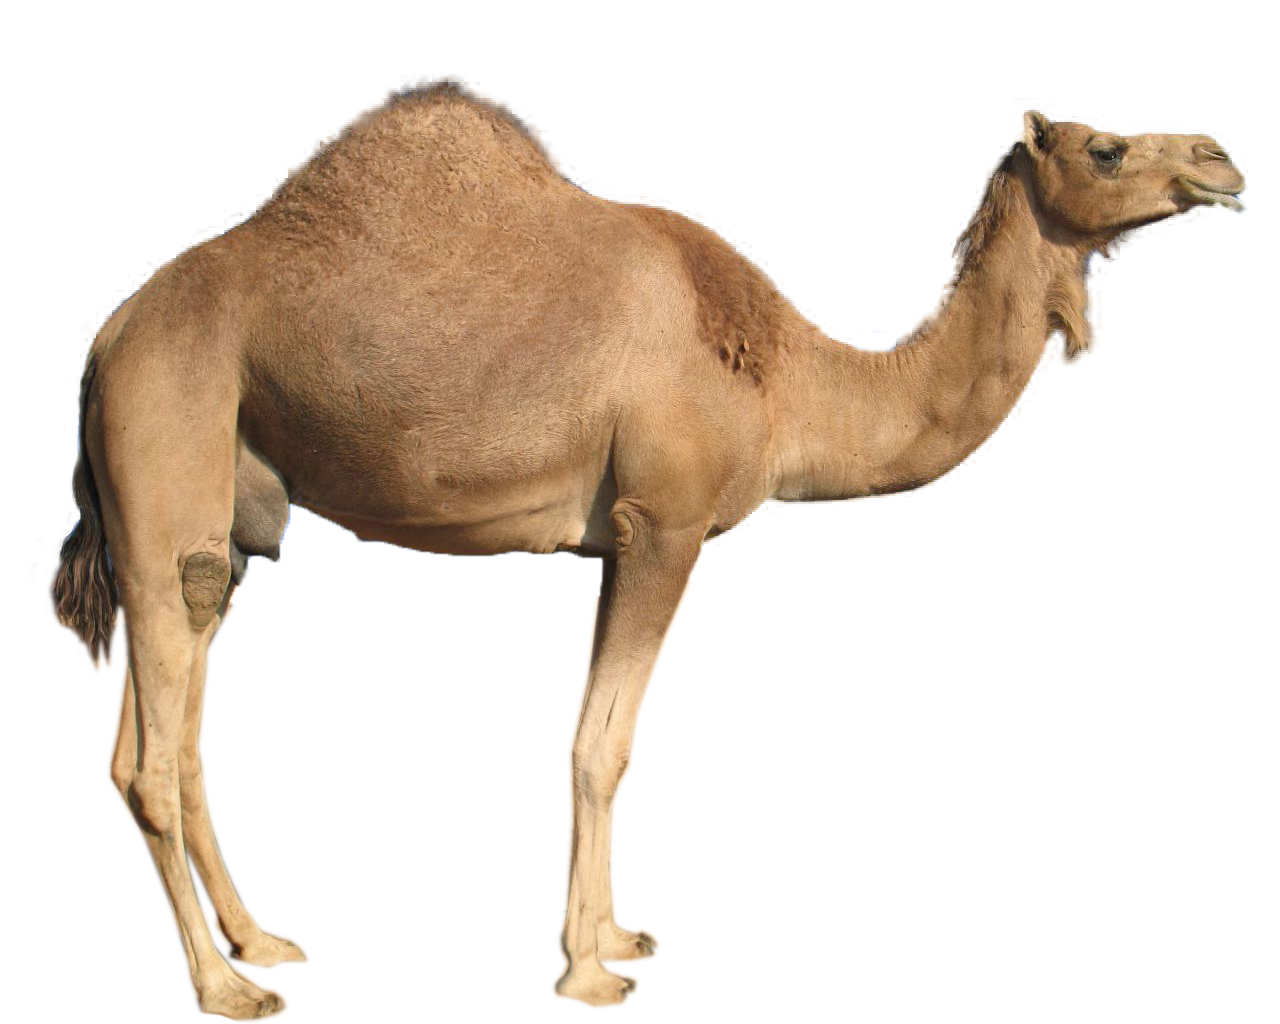 Camel clipart gambar, Camel gambar Transparent FREE for